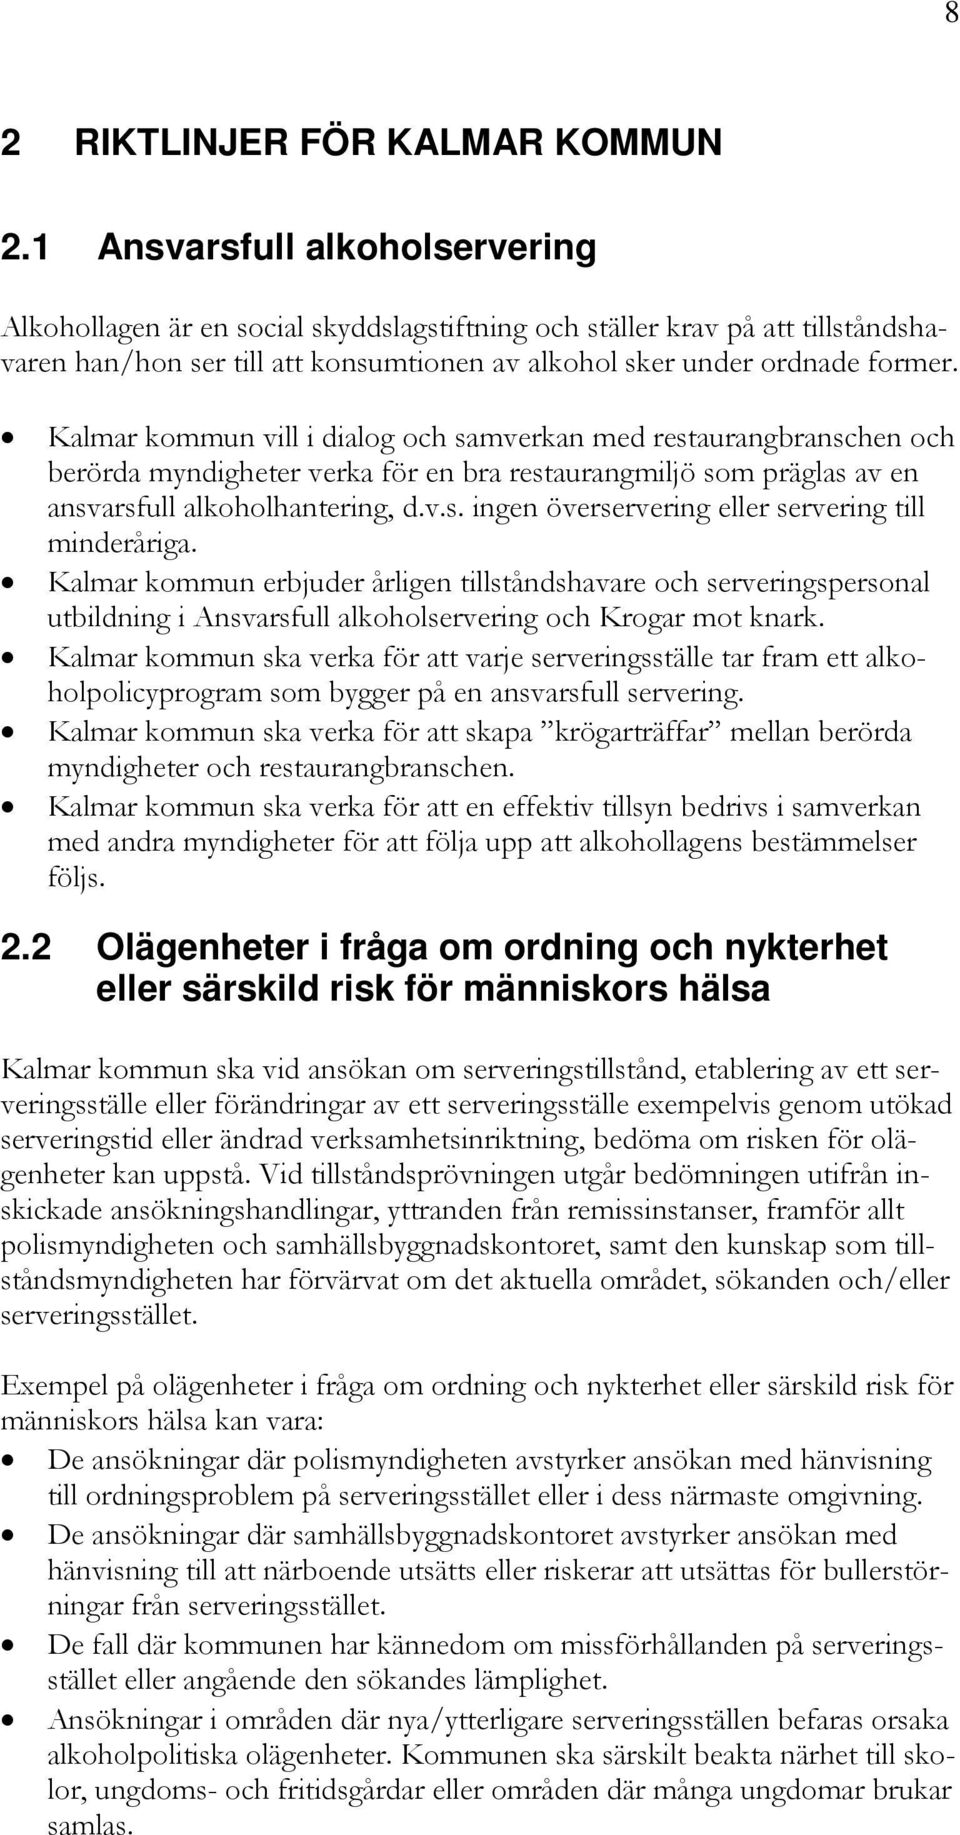 Kalmar kommun vill i dialog och samverkan med restaurangbranschen och berörda myndigheter verka för en bra restaurangmiljö som präglas av en ansvarsfull alkoholhantering, d.v.s. ingen överservering eller servering till minderåriga.